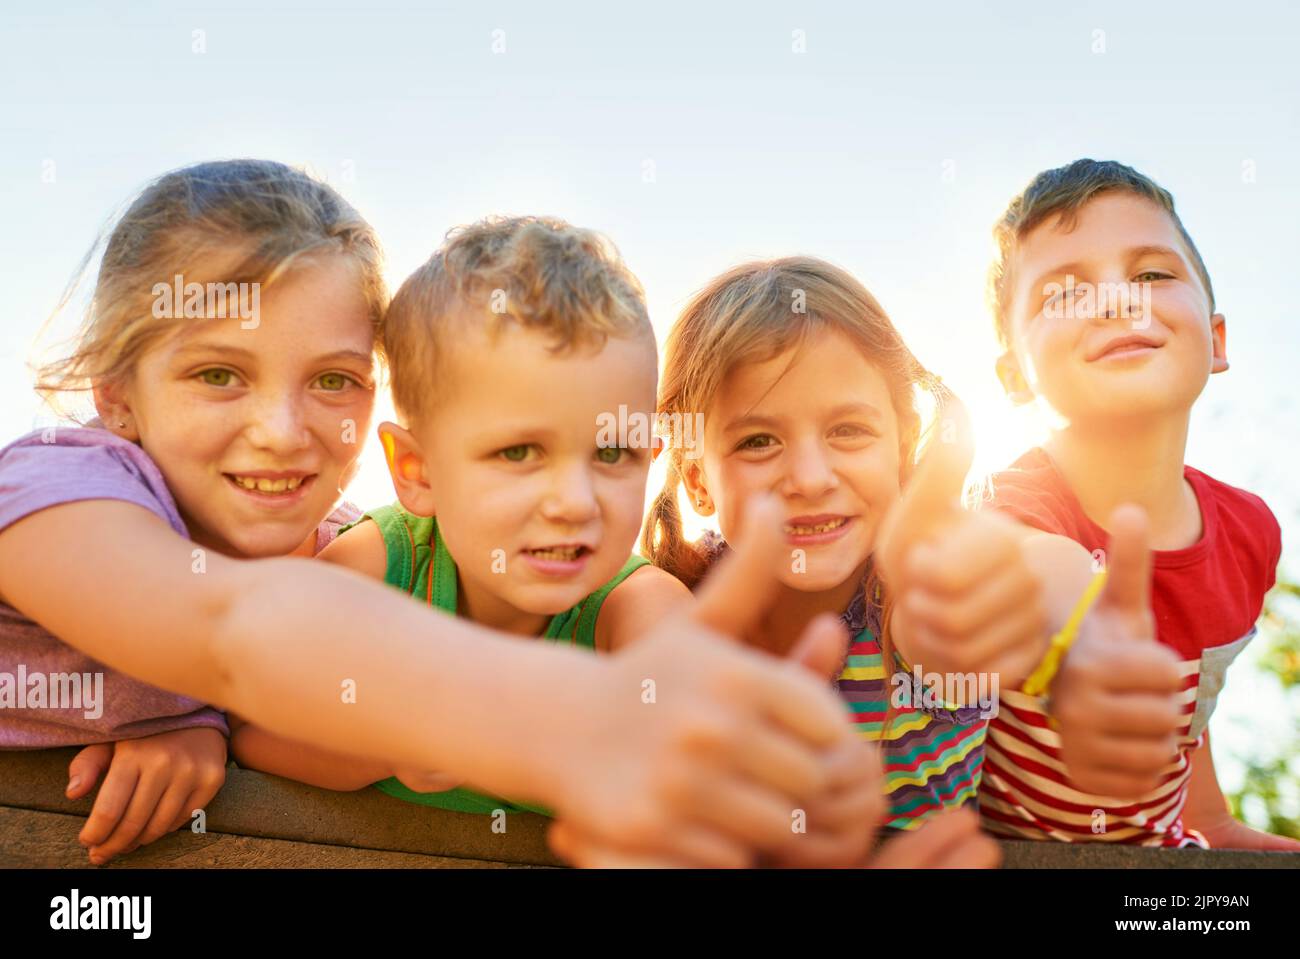 Spielzeit ist die beste Zeit. Porträt einer Gruppe von kleinen Kindern, die Daumen hoch zeigen, während sie im Freien zusammen spielen. Stockfoto